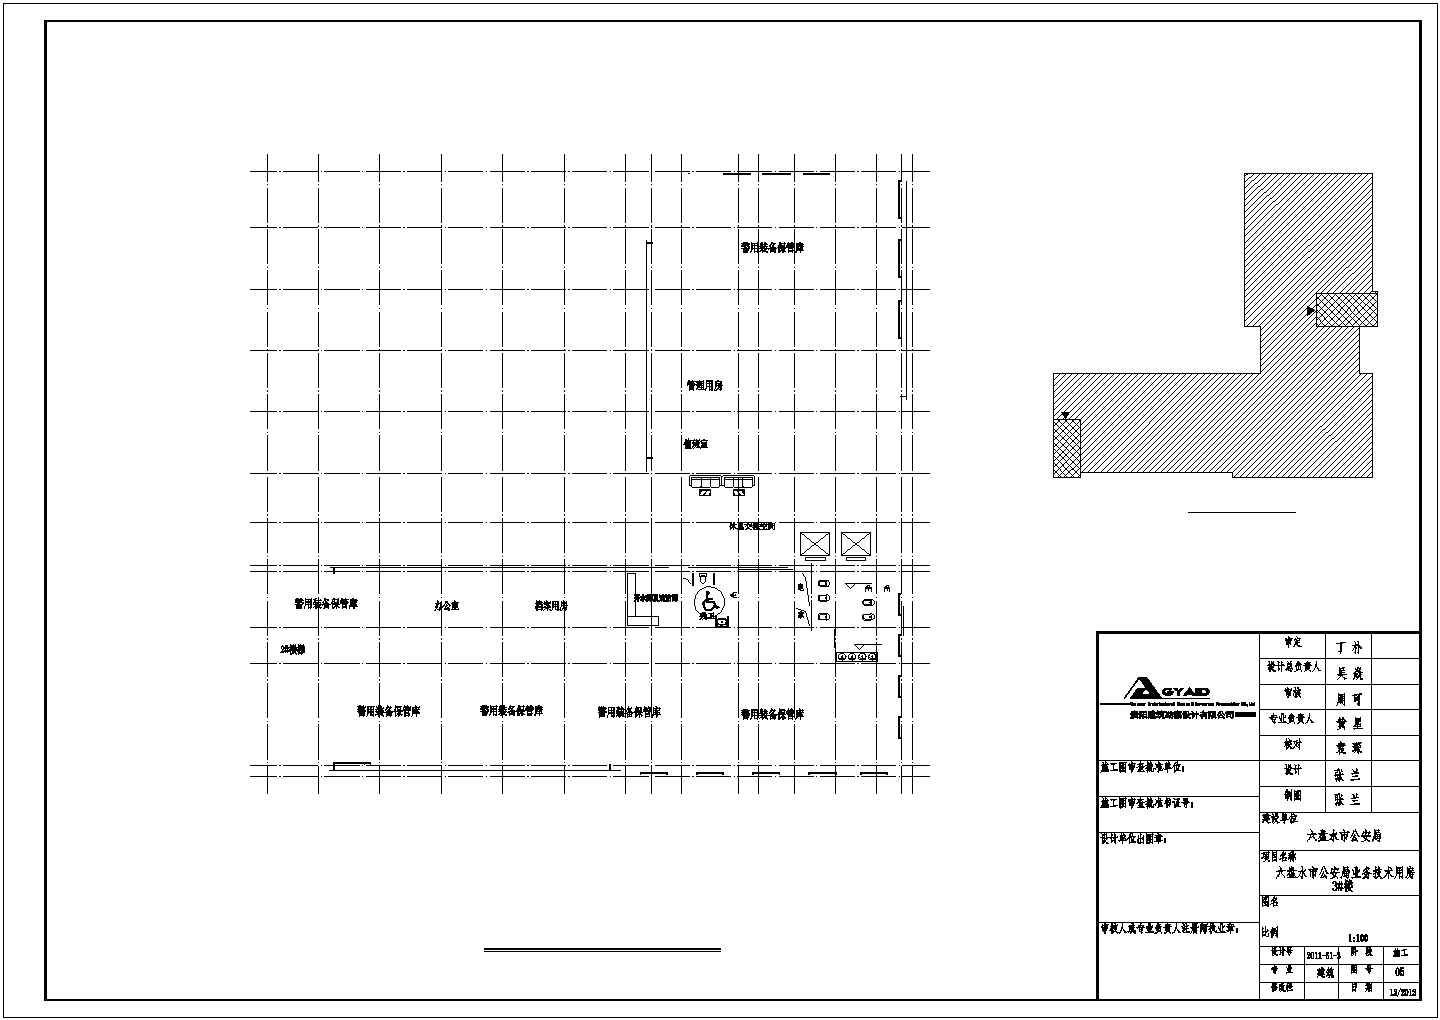 【六盘水市】公安局技术业务用房建筑施工图